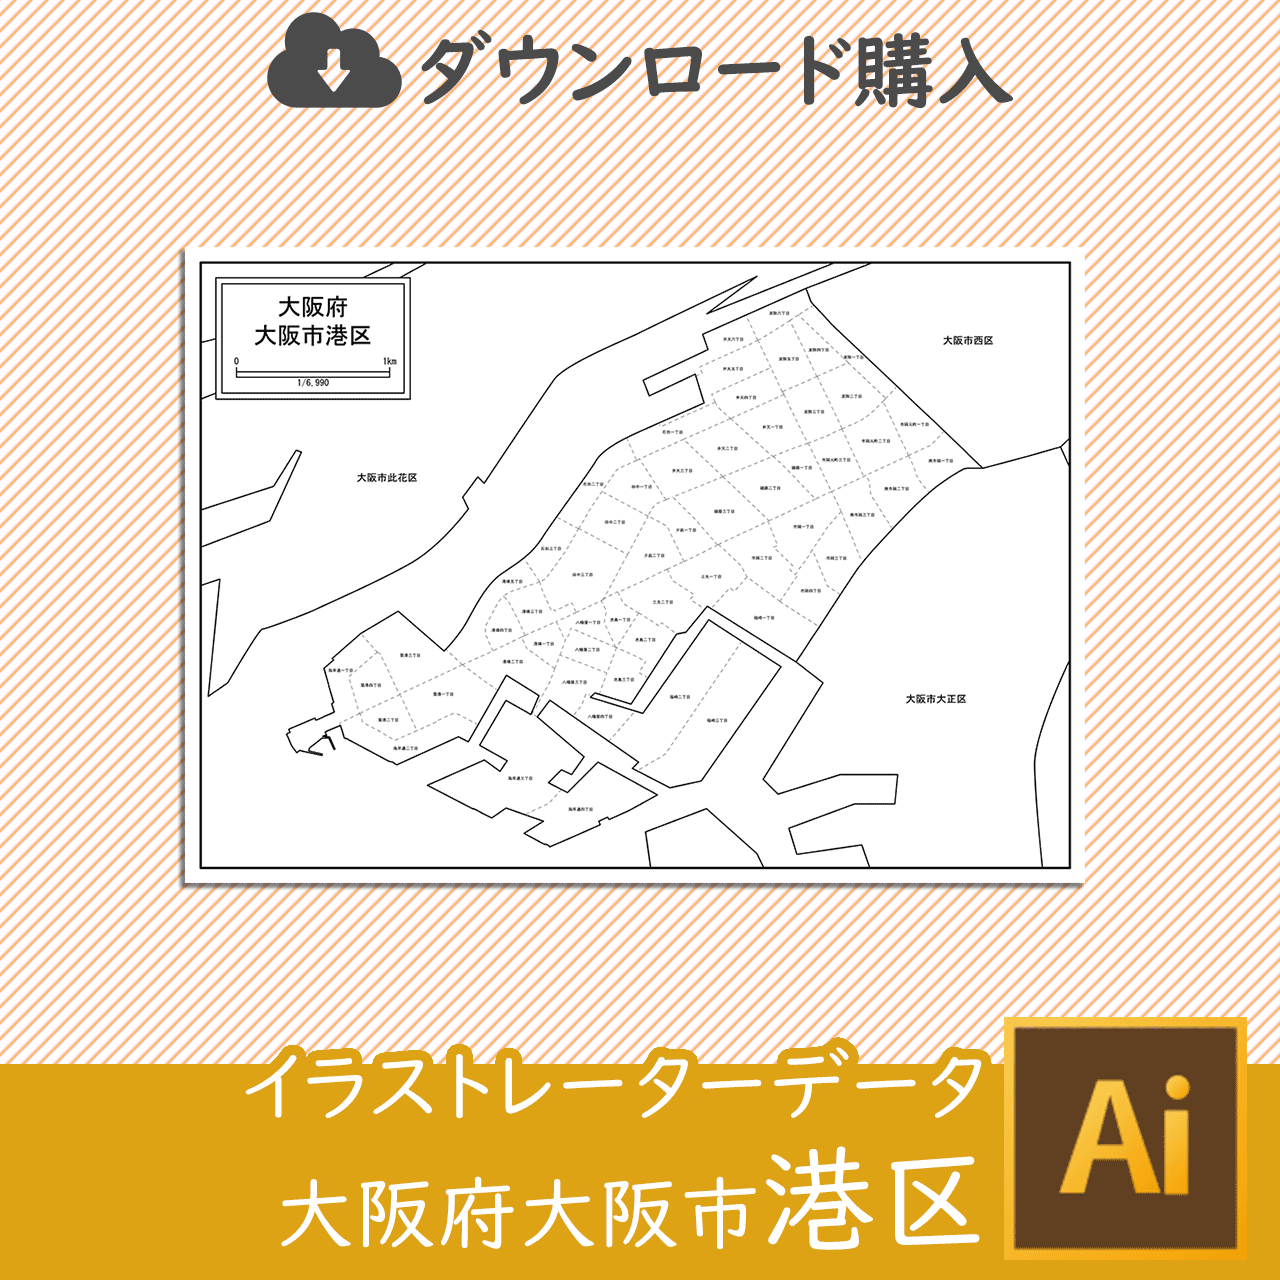 大阪市港区のaiデータのサムネイル画像